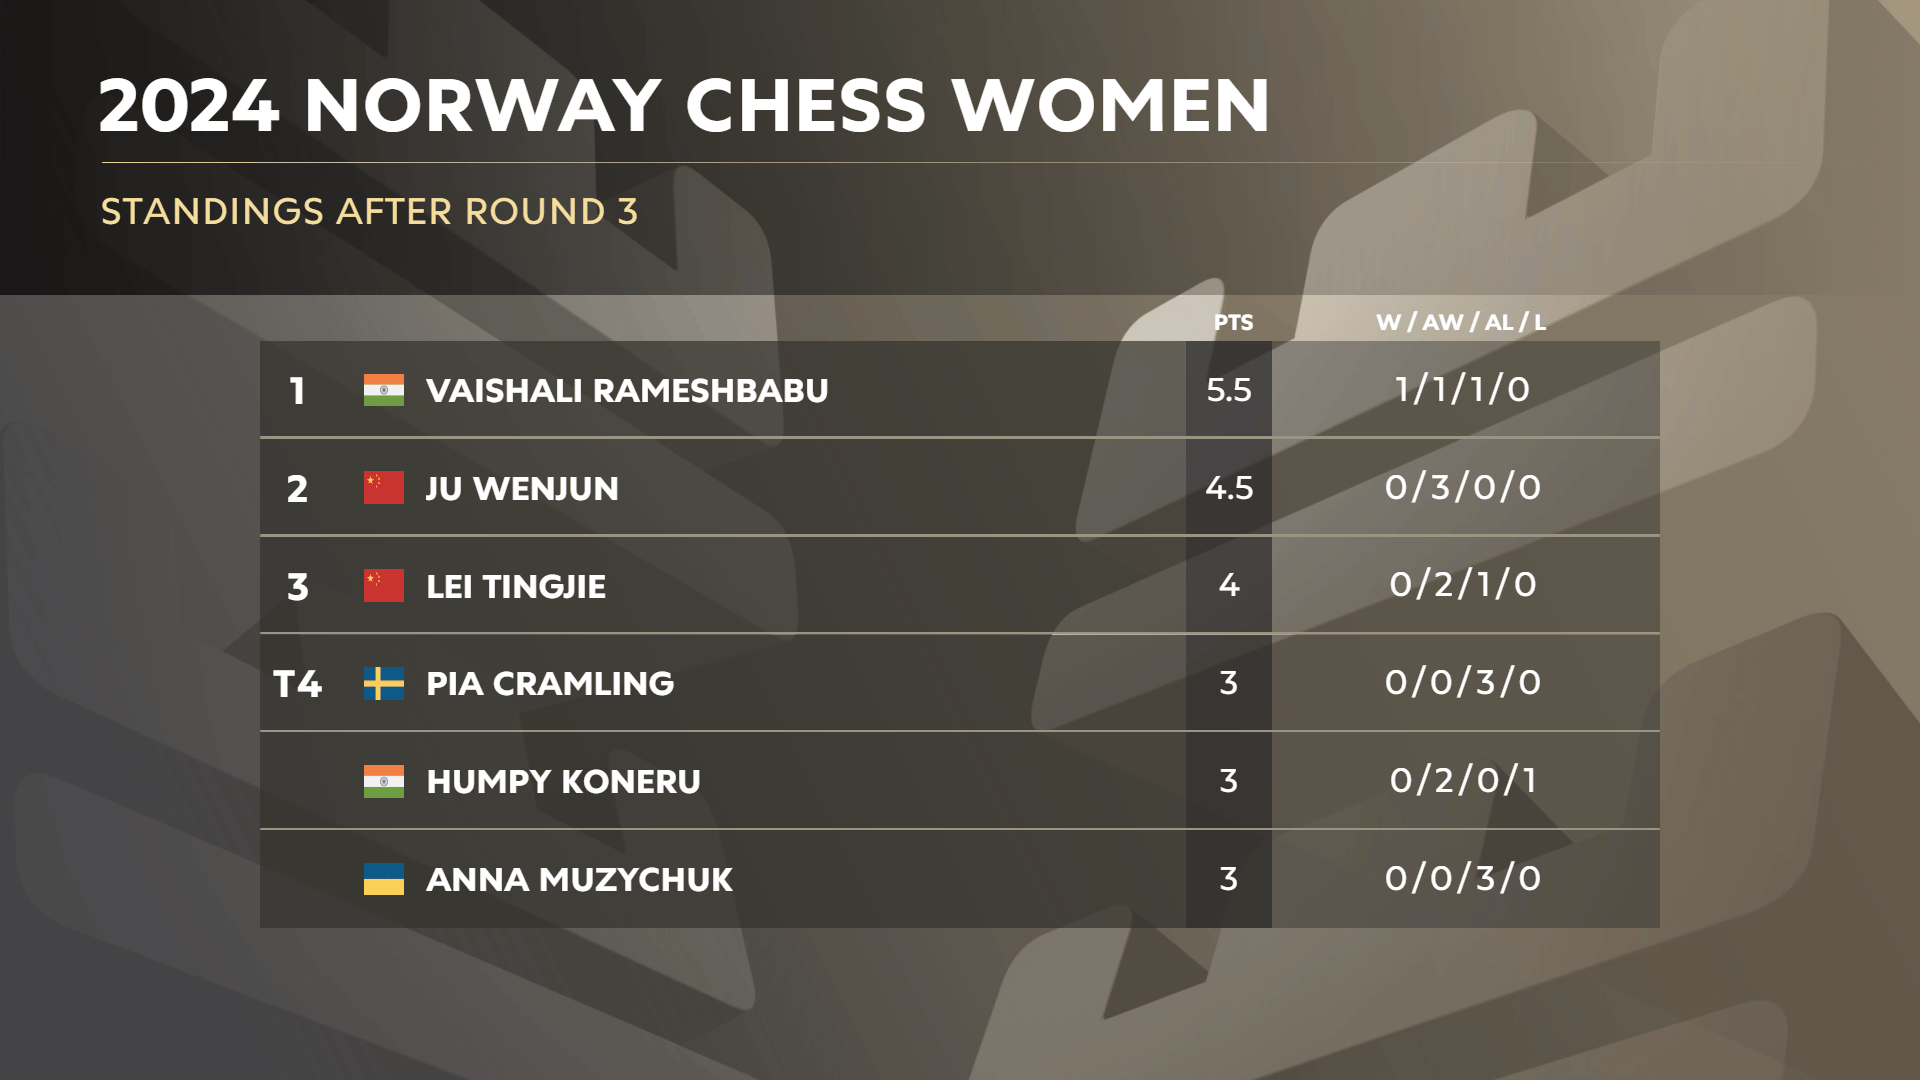 挪威国际象棋女子 2024 年第 3 轮排名